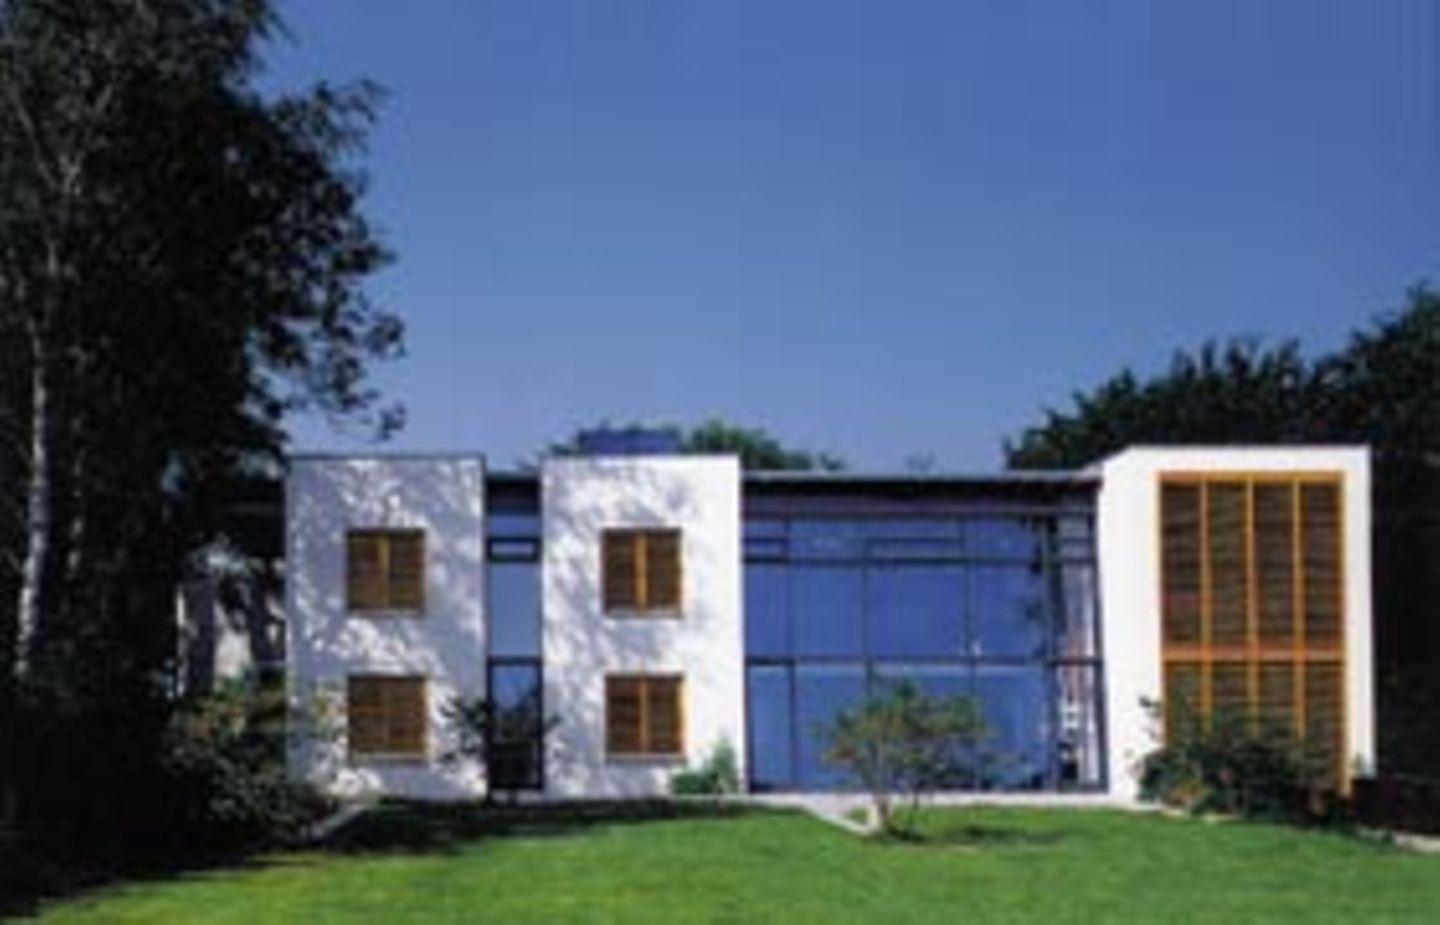 Haus Niemann in Stampe baute Manfred Nagel als Wohnhalle mit Atelierverglasung und reizvollen Raumfolgen, geschlossen zur Straße, offen zum Feld.